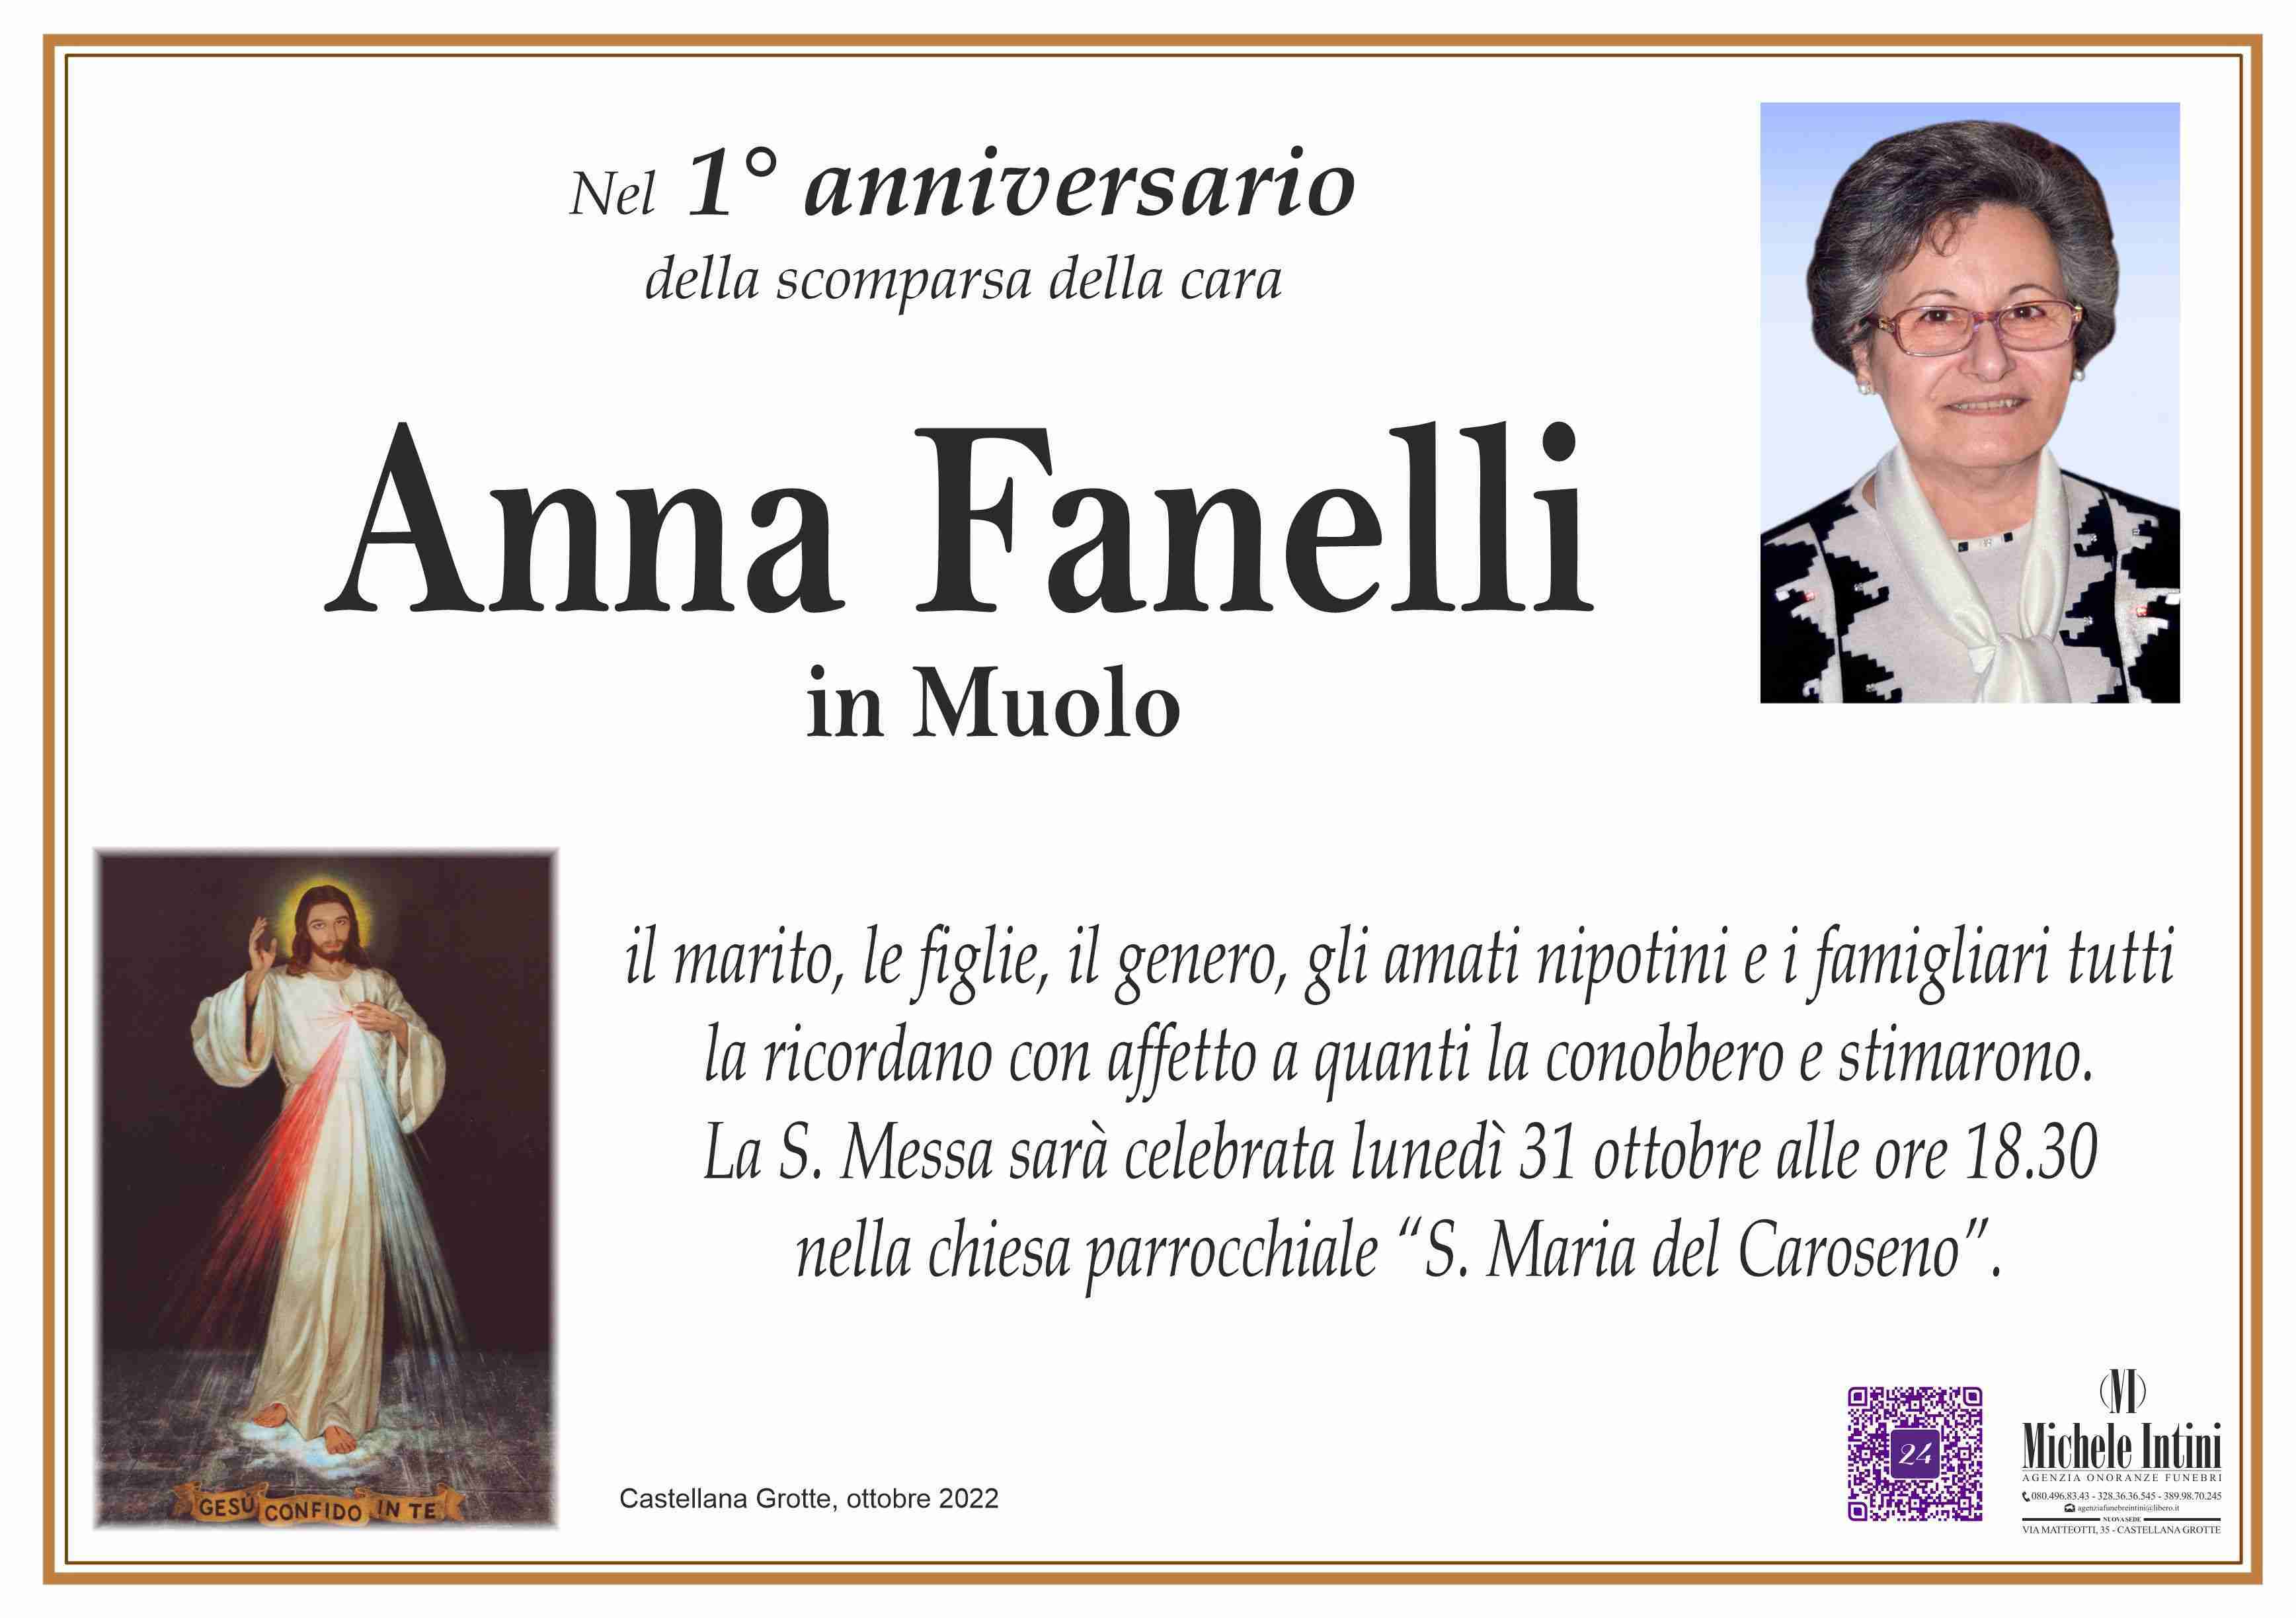 Anna Fanelli